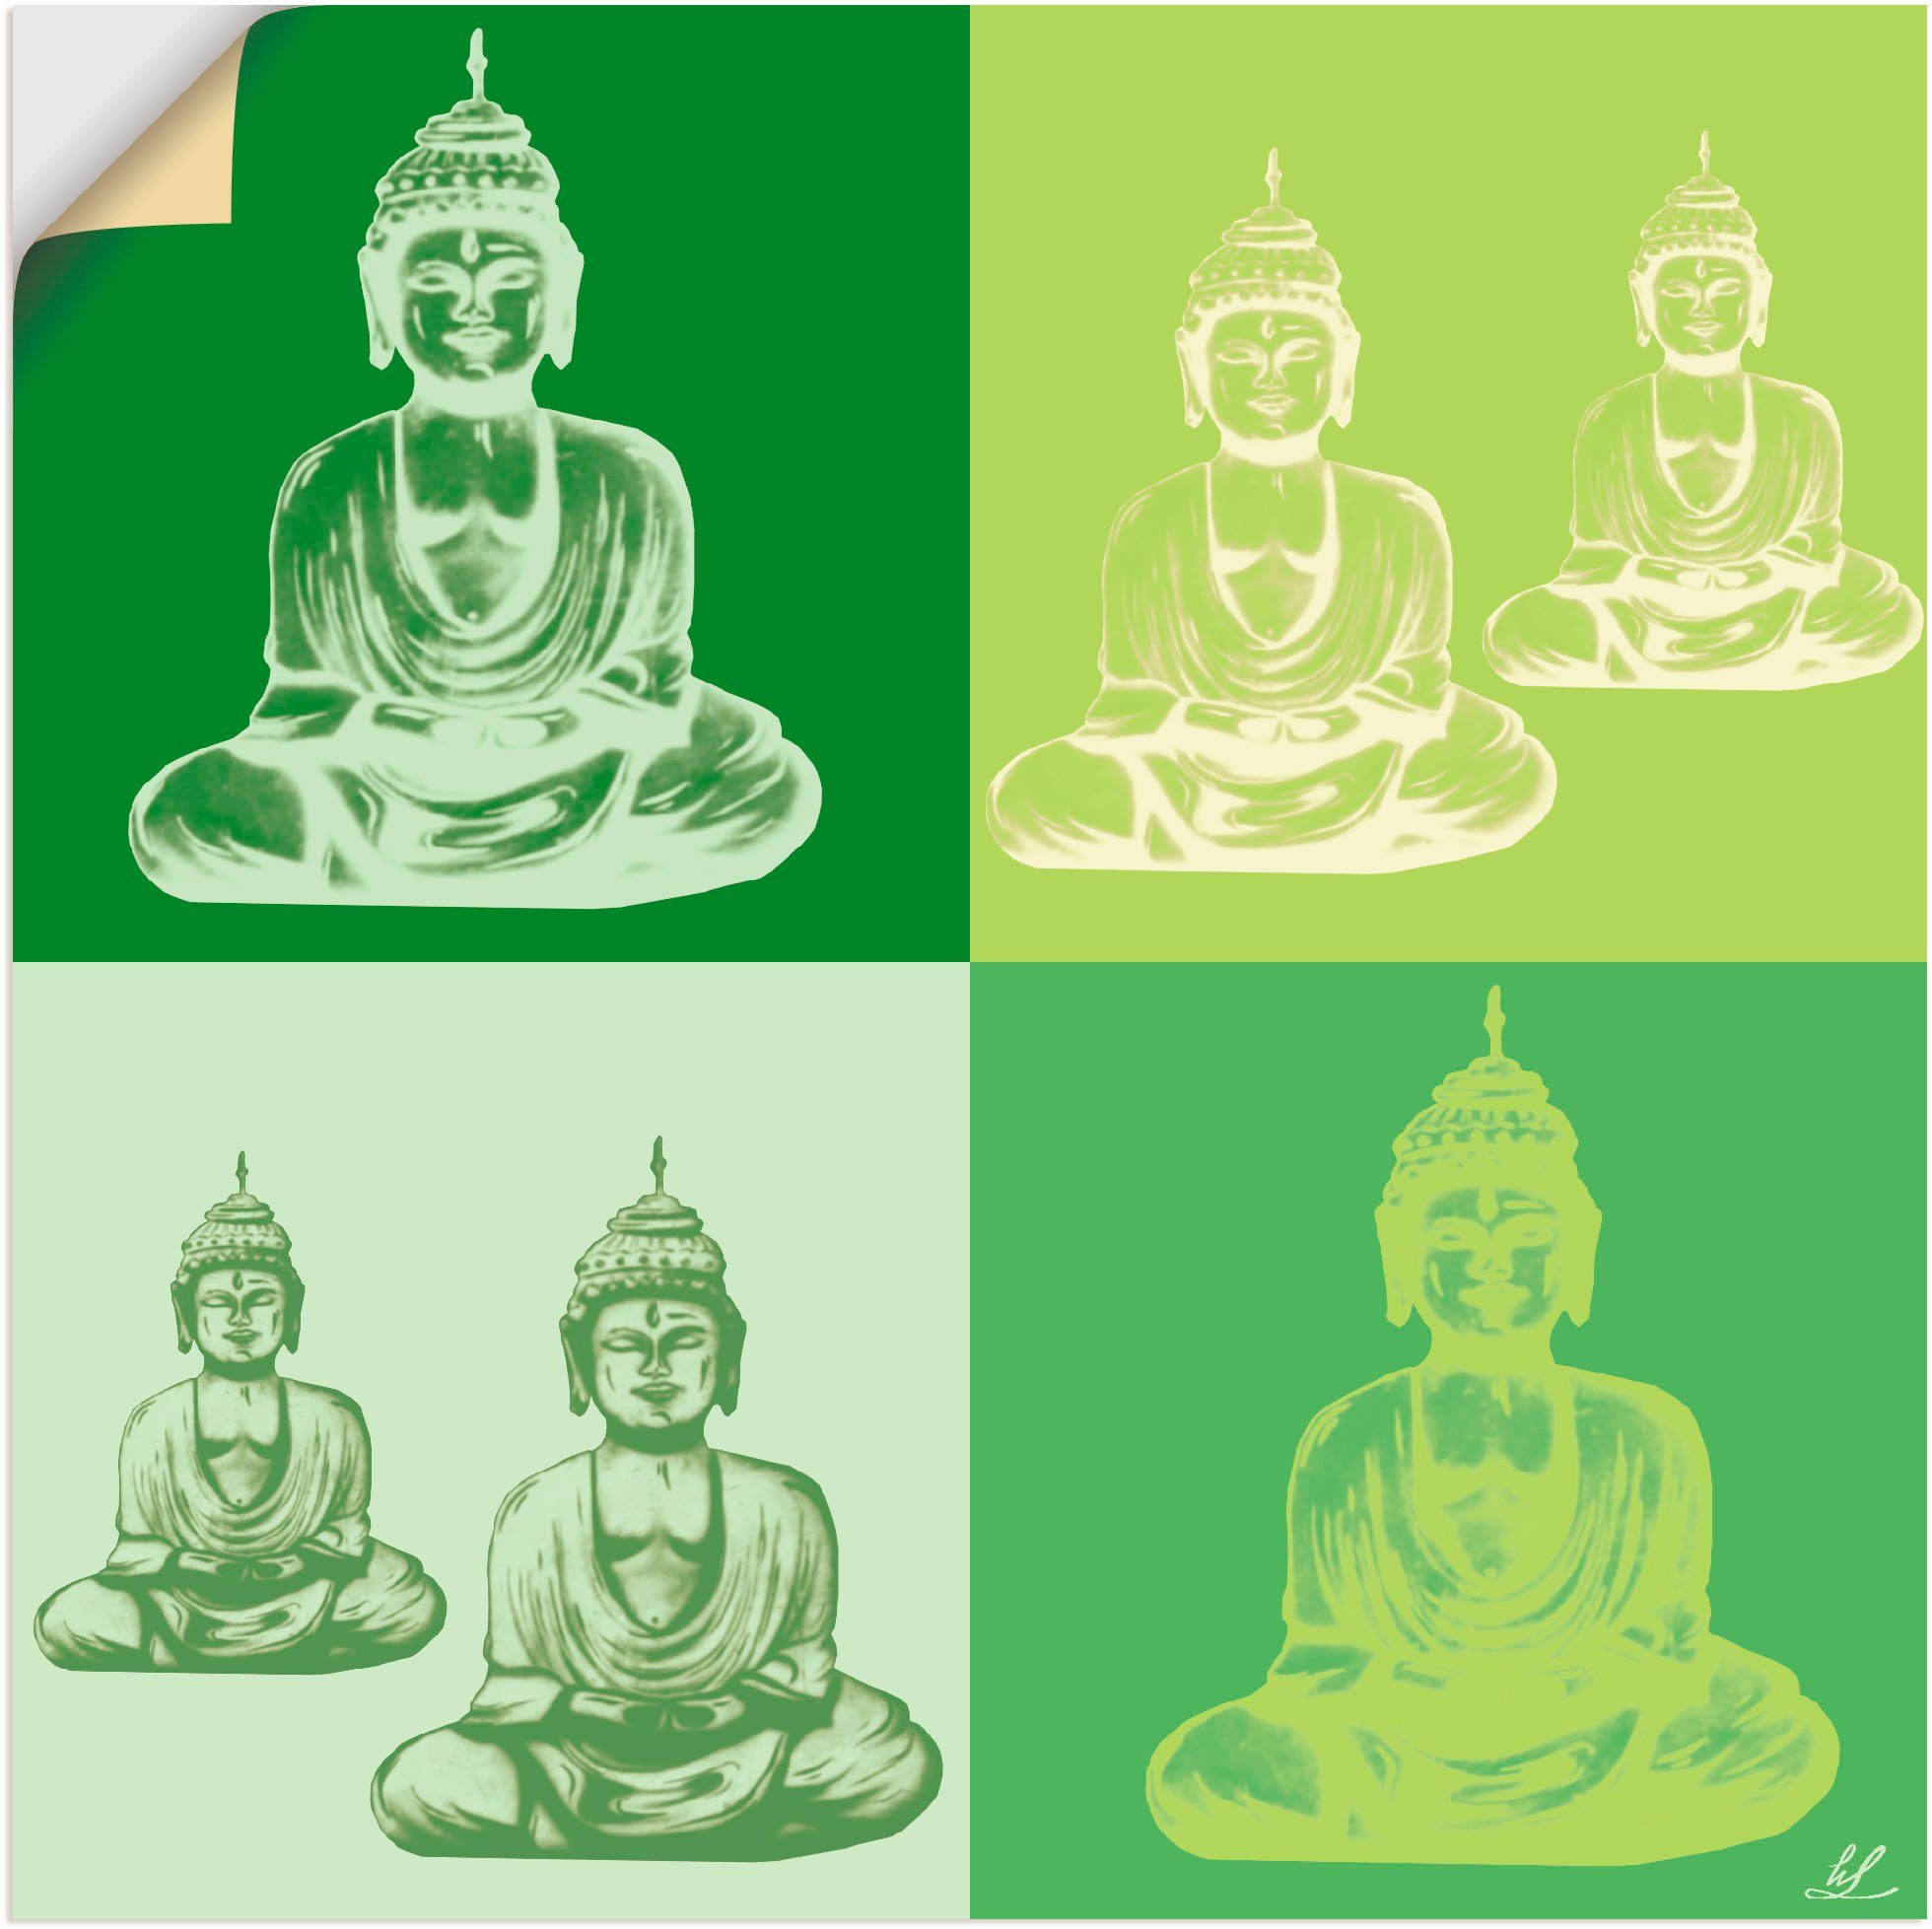 Artland Artprint Boeddha in vele afmetingen & productsoorten - artprint van aluminium / artprint voor buiten, artprint op linnen, poster, muursticker / wandfolie ook geschikt voor